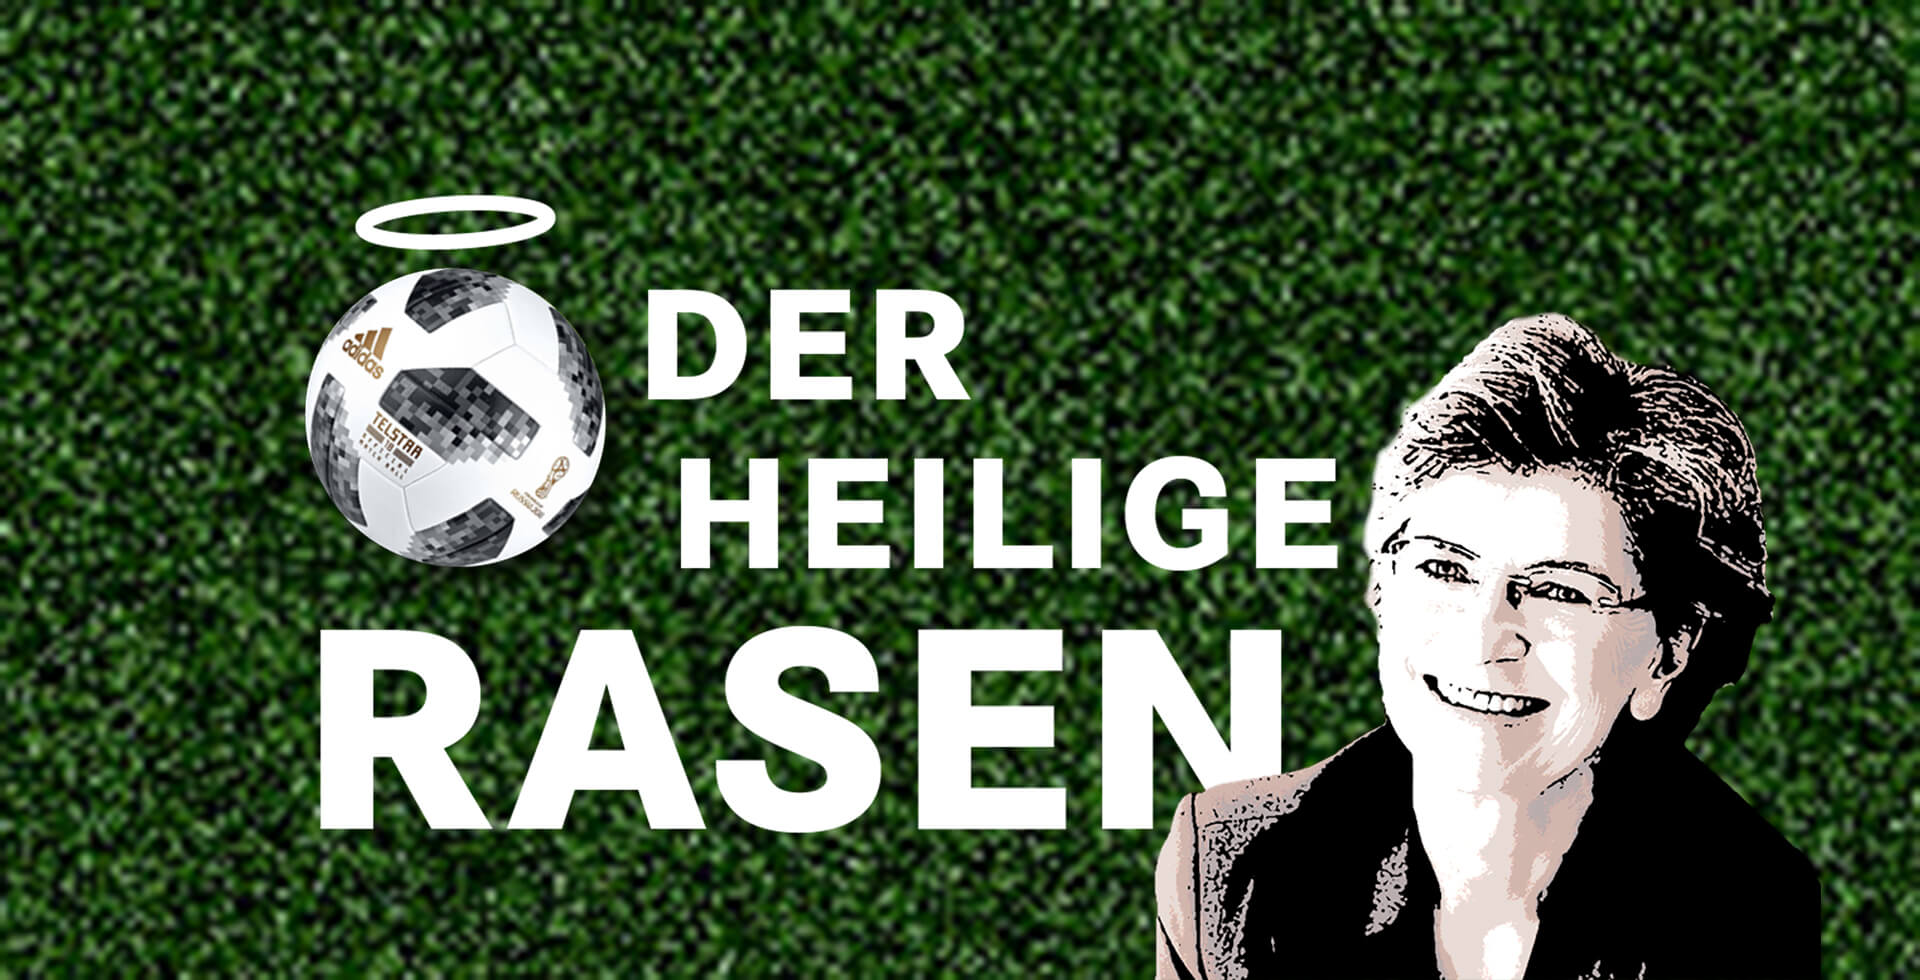 Titelbild chrismon-Blog 'Der heilige Rasen' zur Fußball Europameisterschaft